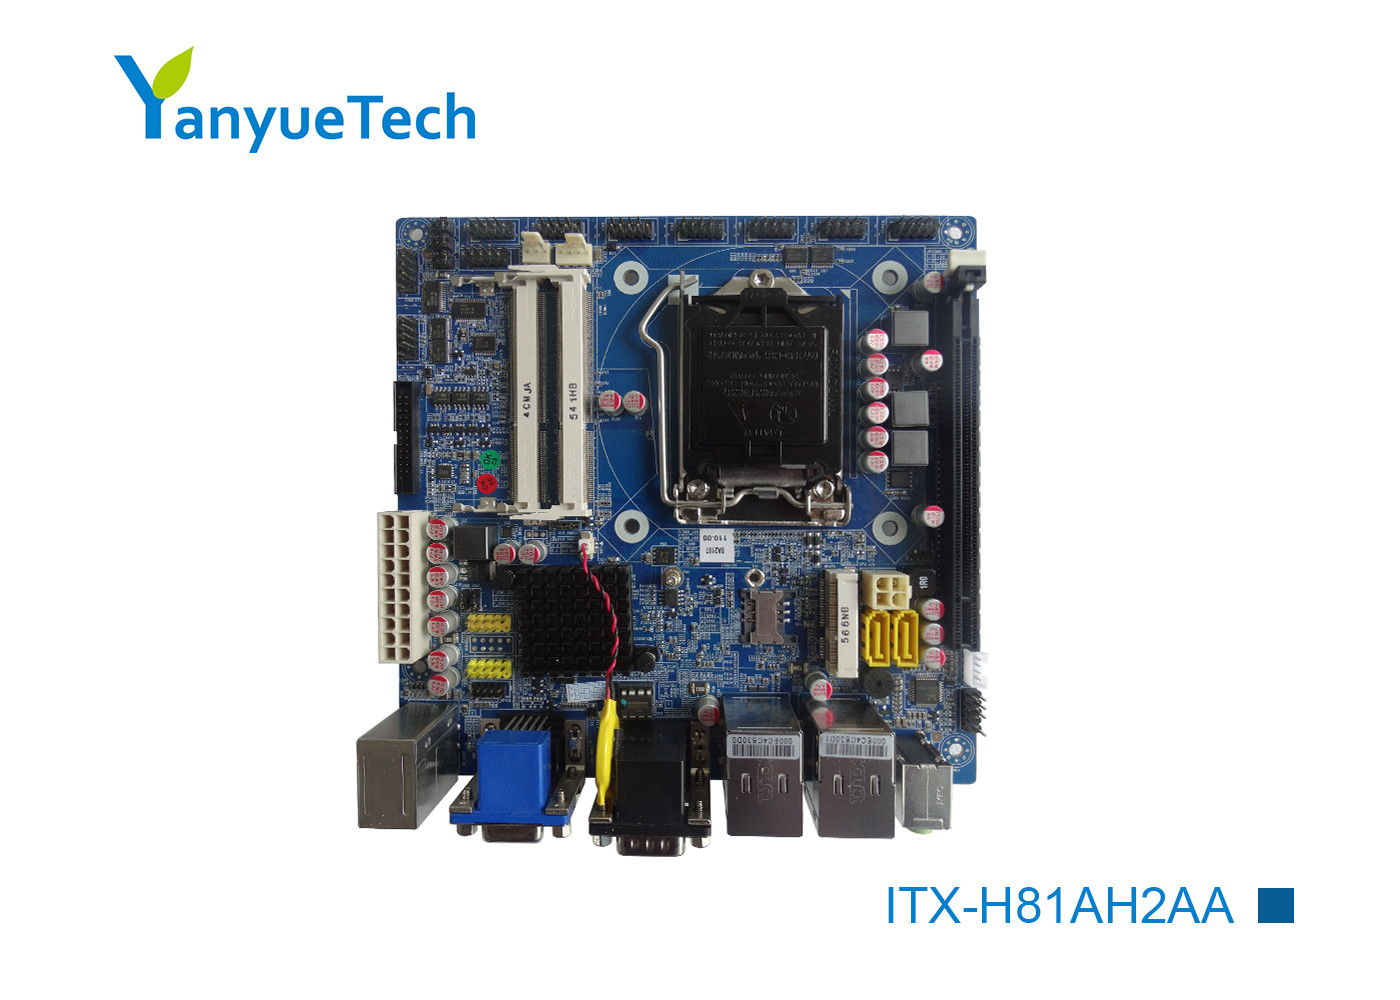 ITX-H81AH2AA Thin Mini ITX Motherboard Gigabyte Intel H81 Mini Itx 10 COM 10 USB PCIEx16 Slot